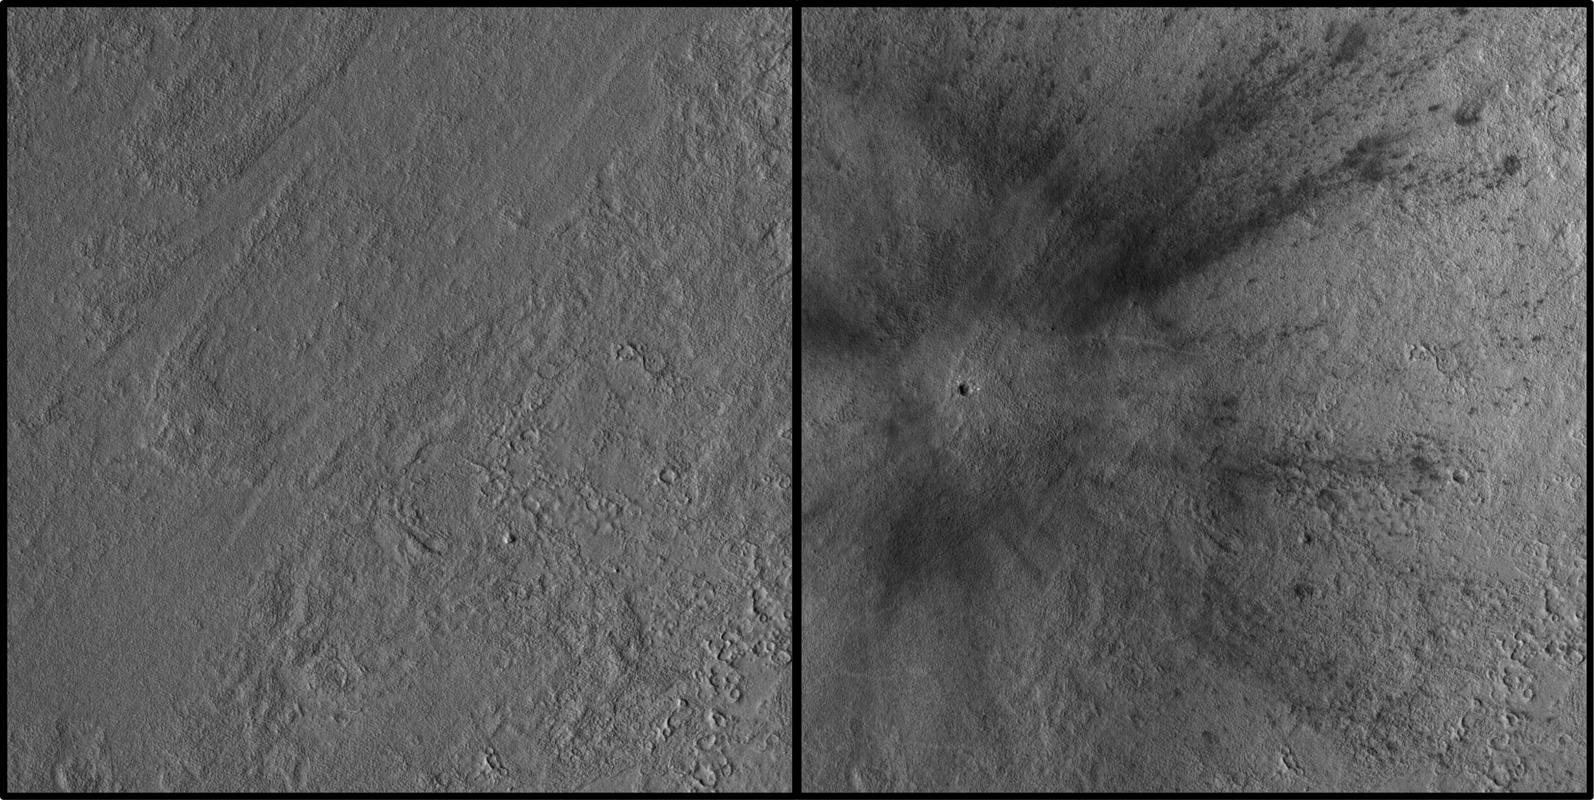 Prej in potem. Foto: NASA/JPL-Caltech/University of Arizona